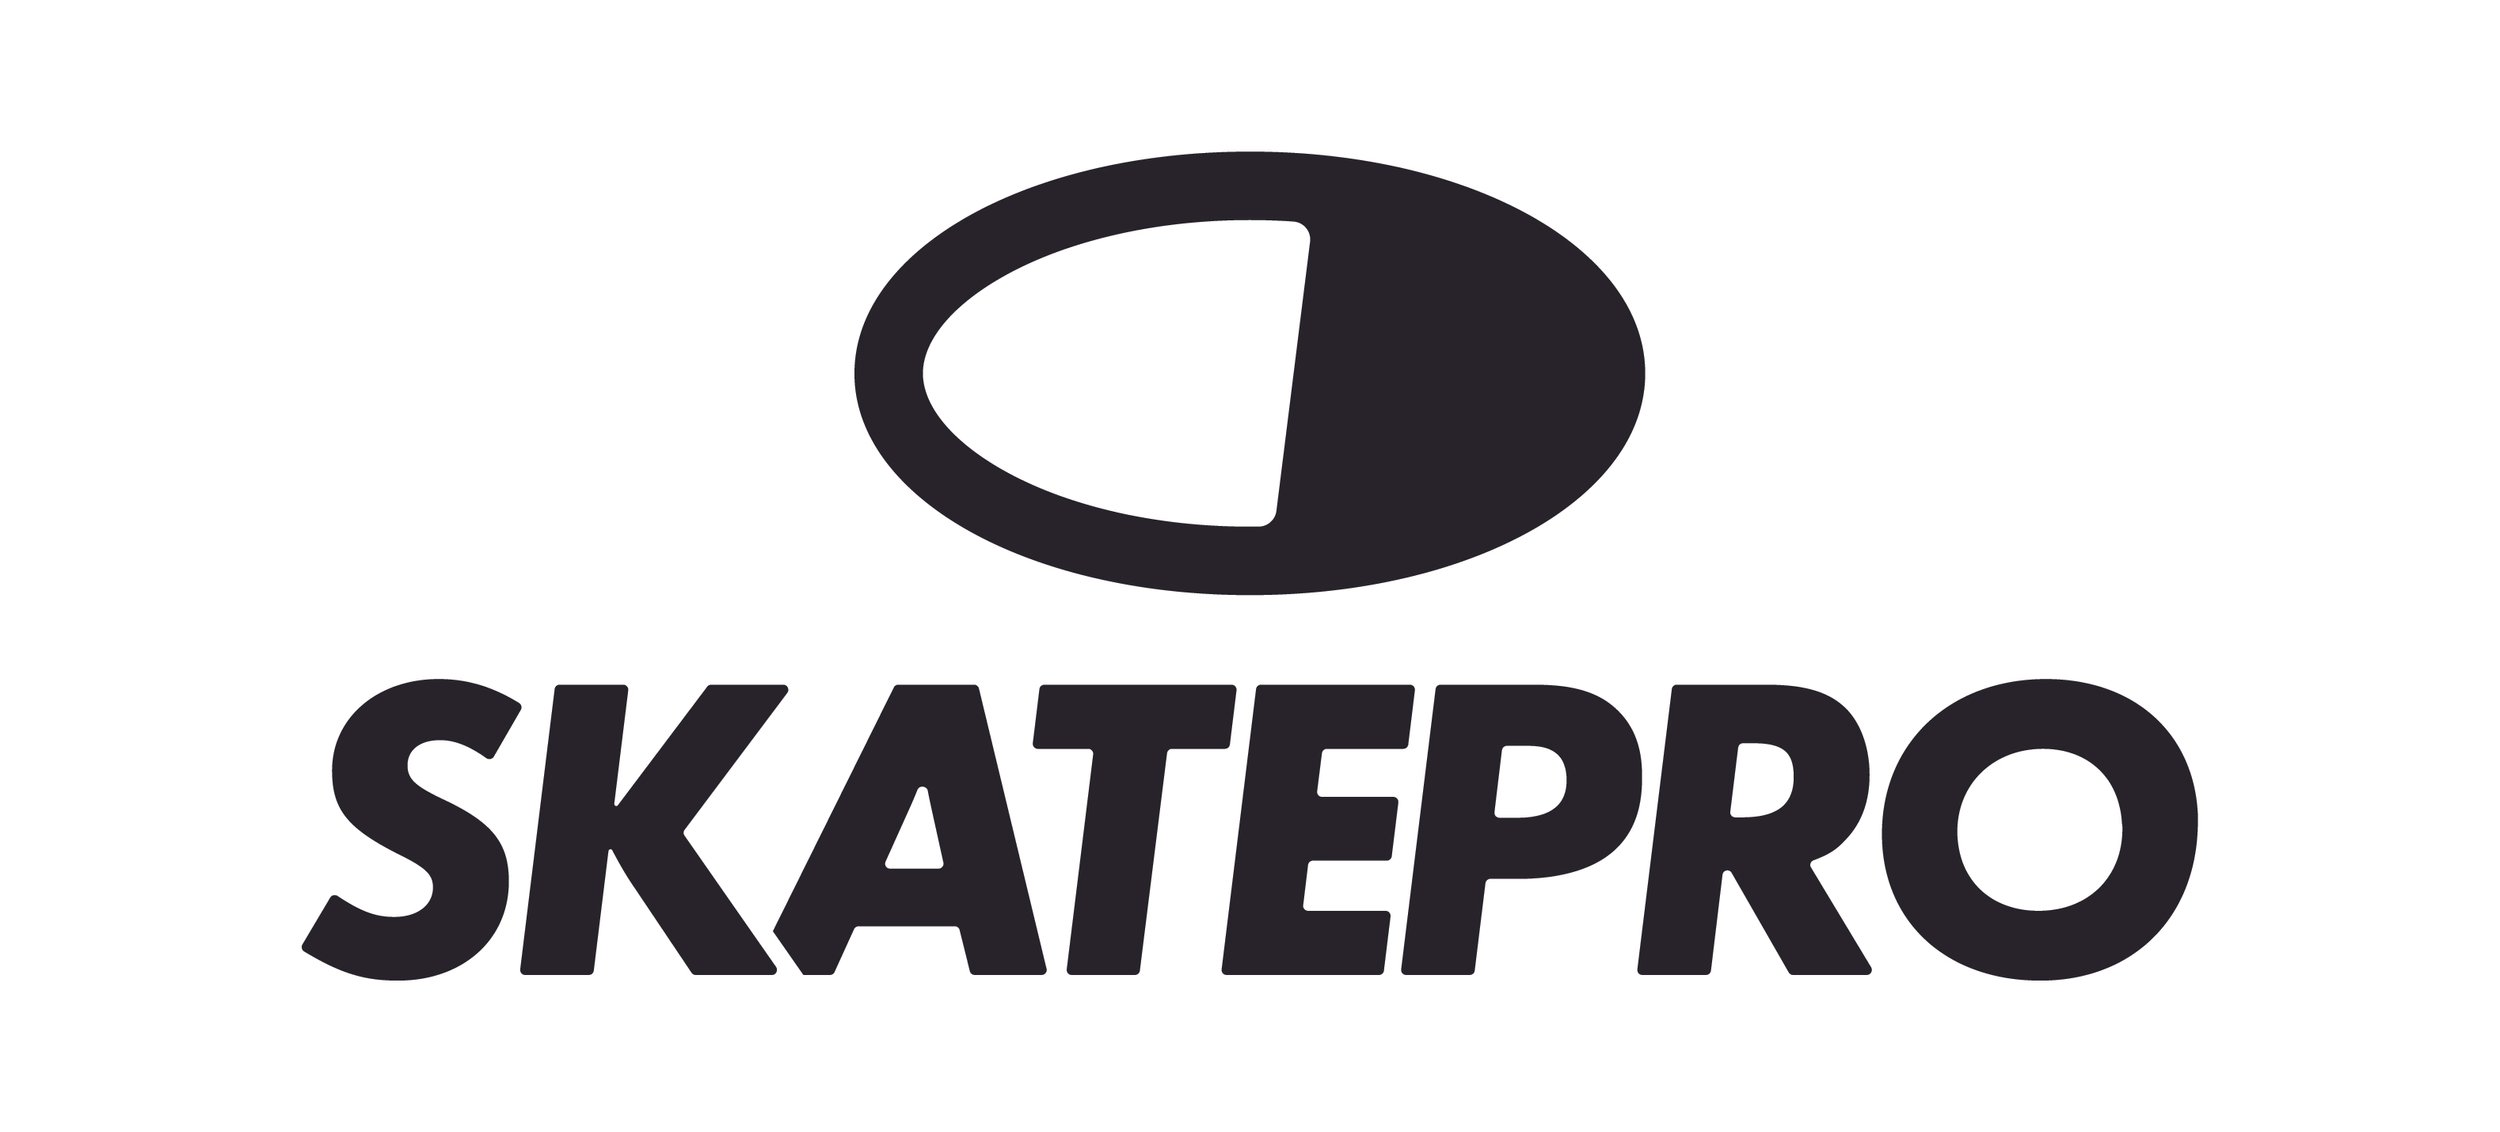 Skatepro_logo_main_2019_black.jpg